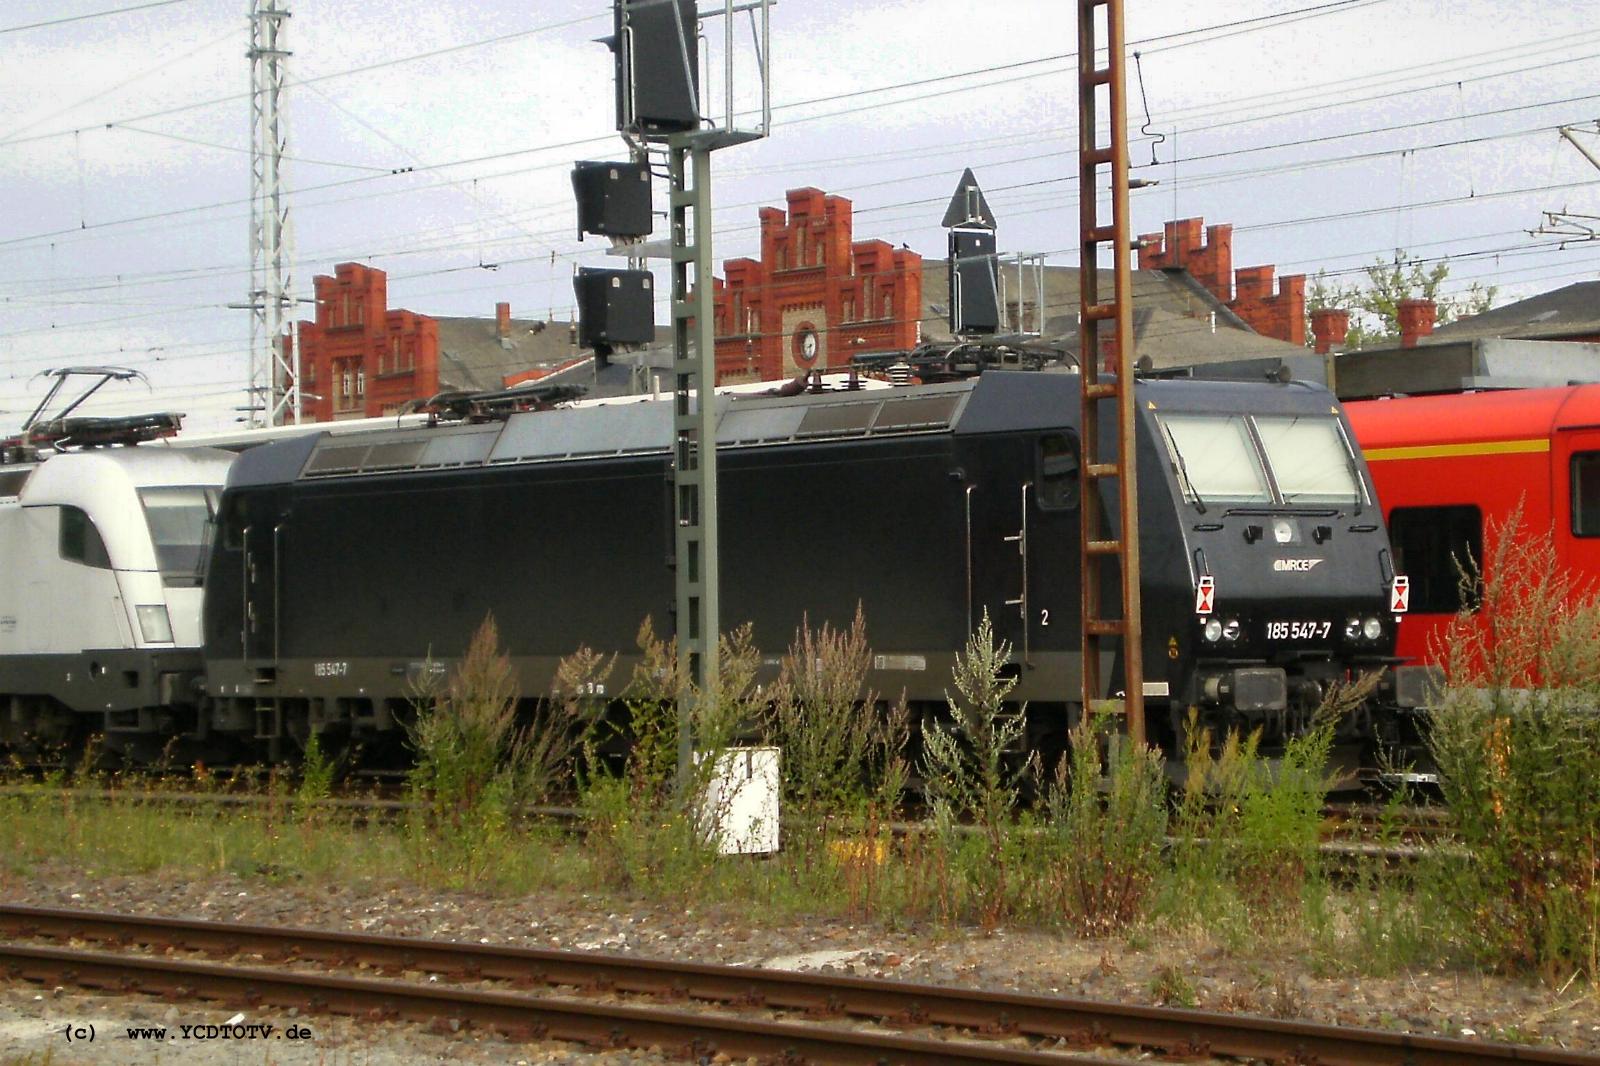 Bahnhof Stendal 25.07.2010, 185 547-7 MRCE 